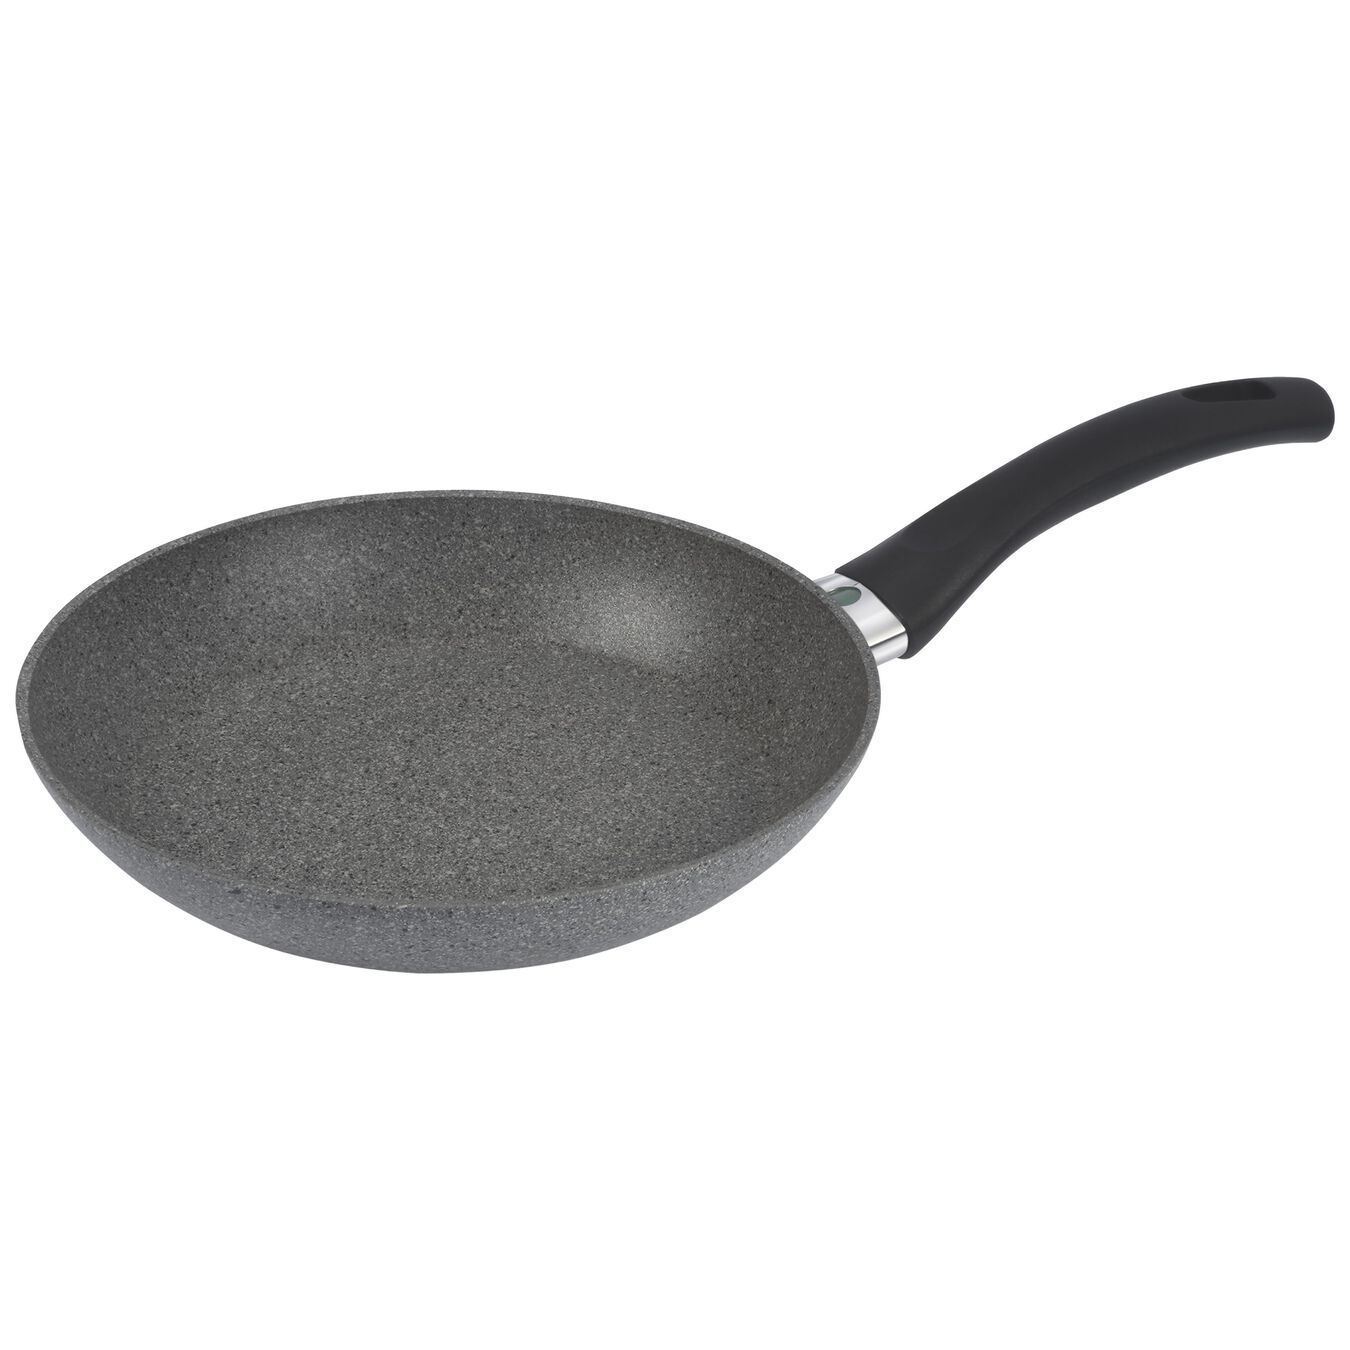 24 cm Aluminium Frying pan,,large 1